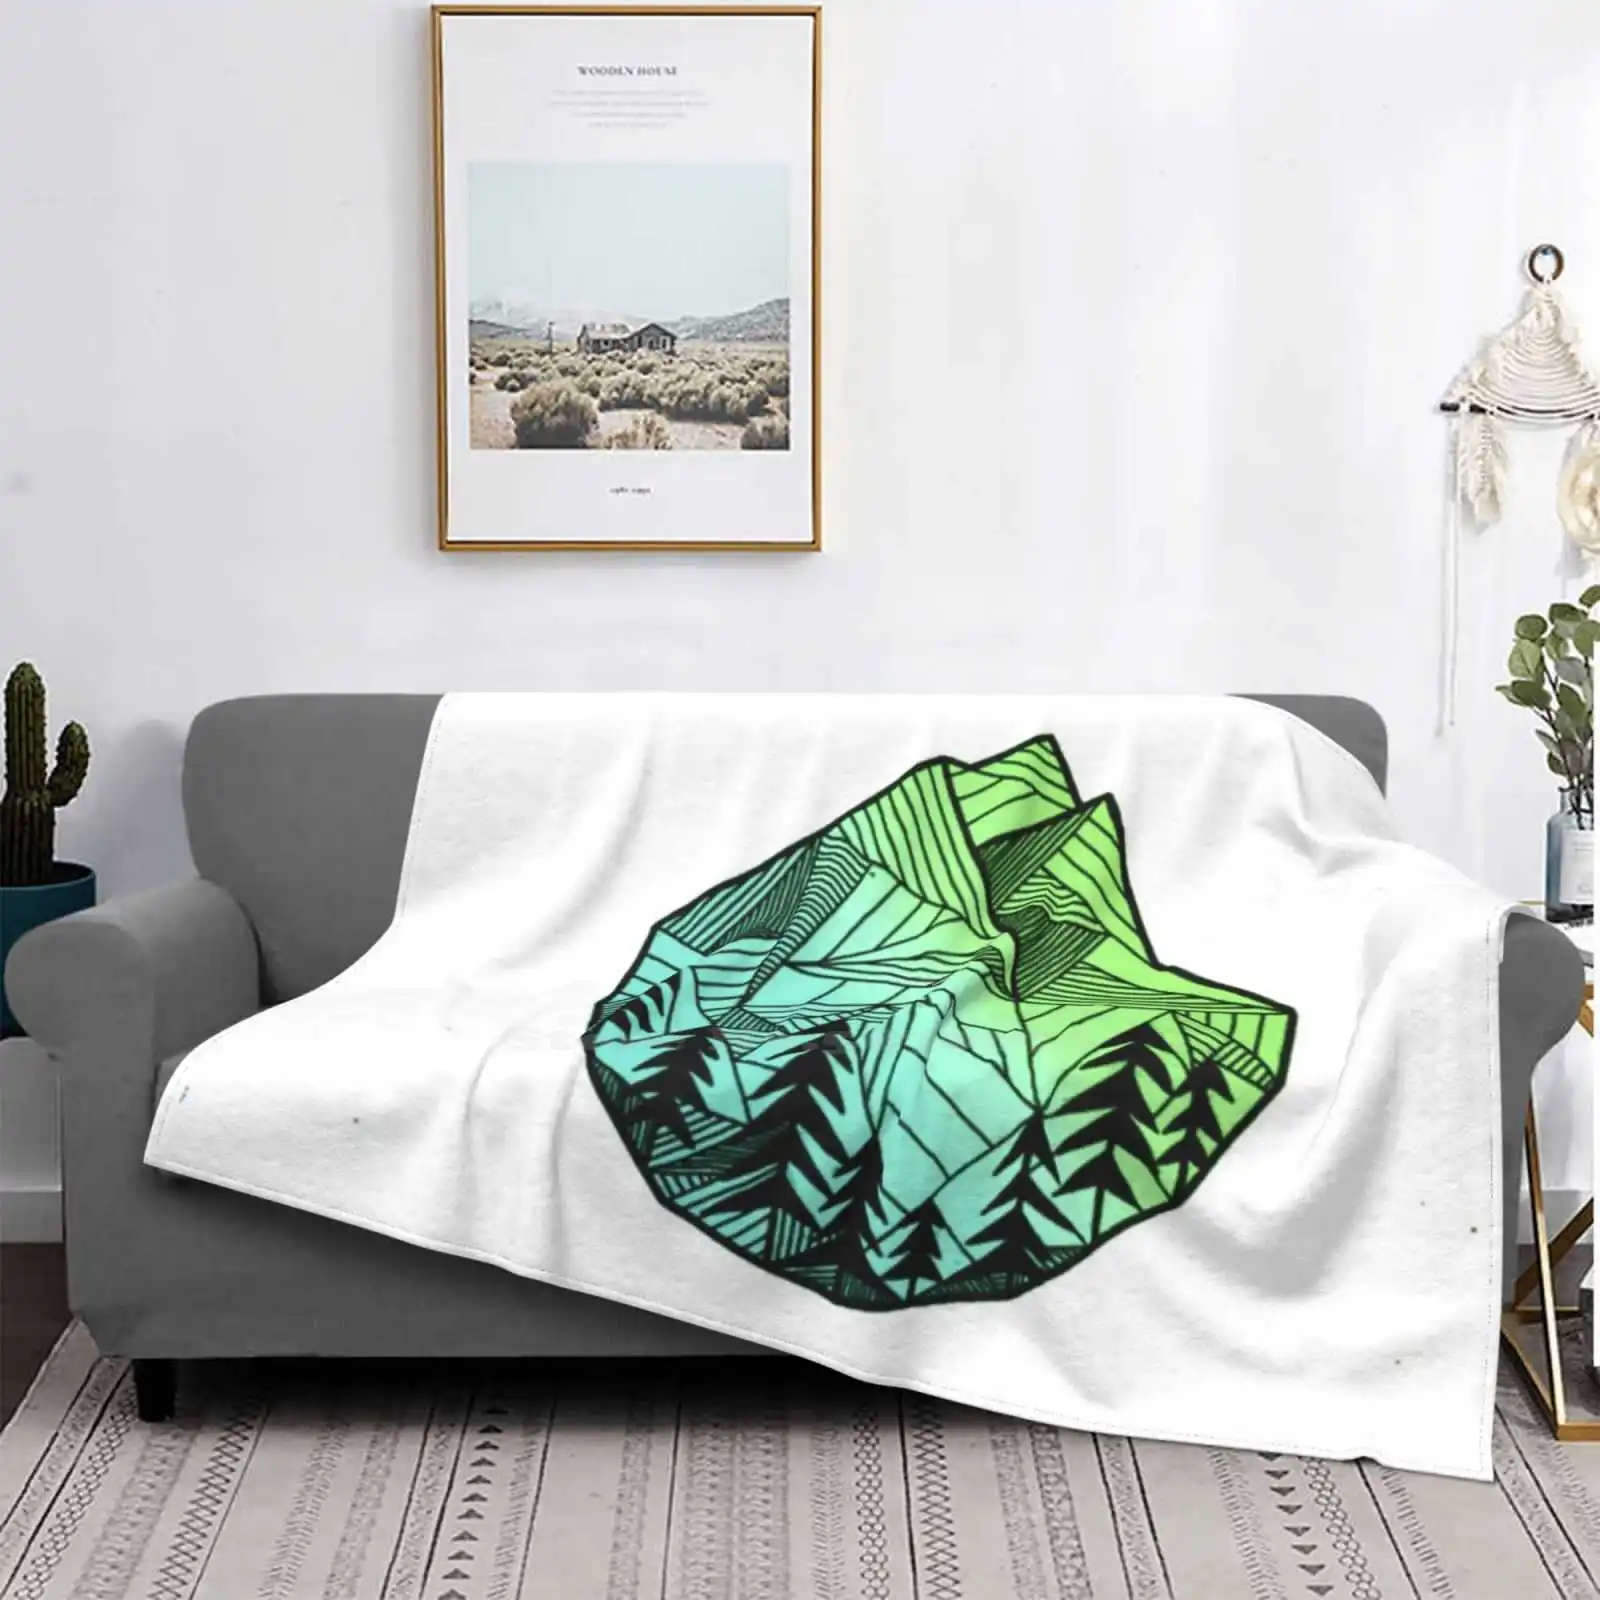 

Зеленый геометрический дизайн с логотипом гор для фотосемейства кемпинга автомобиля самолета Путешествия портативное одеяло для Норвегии...